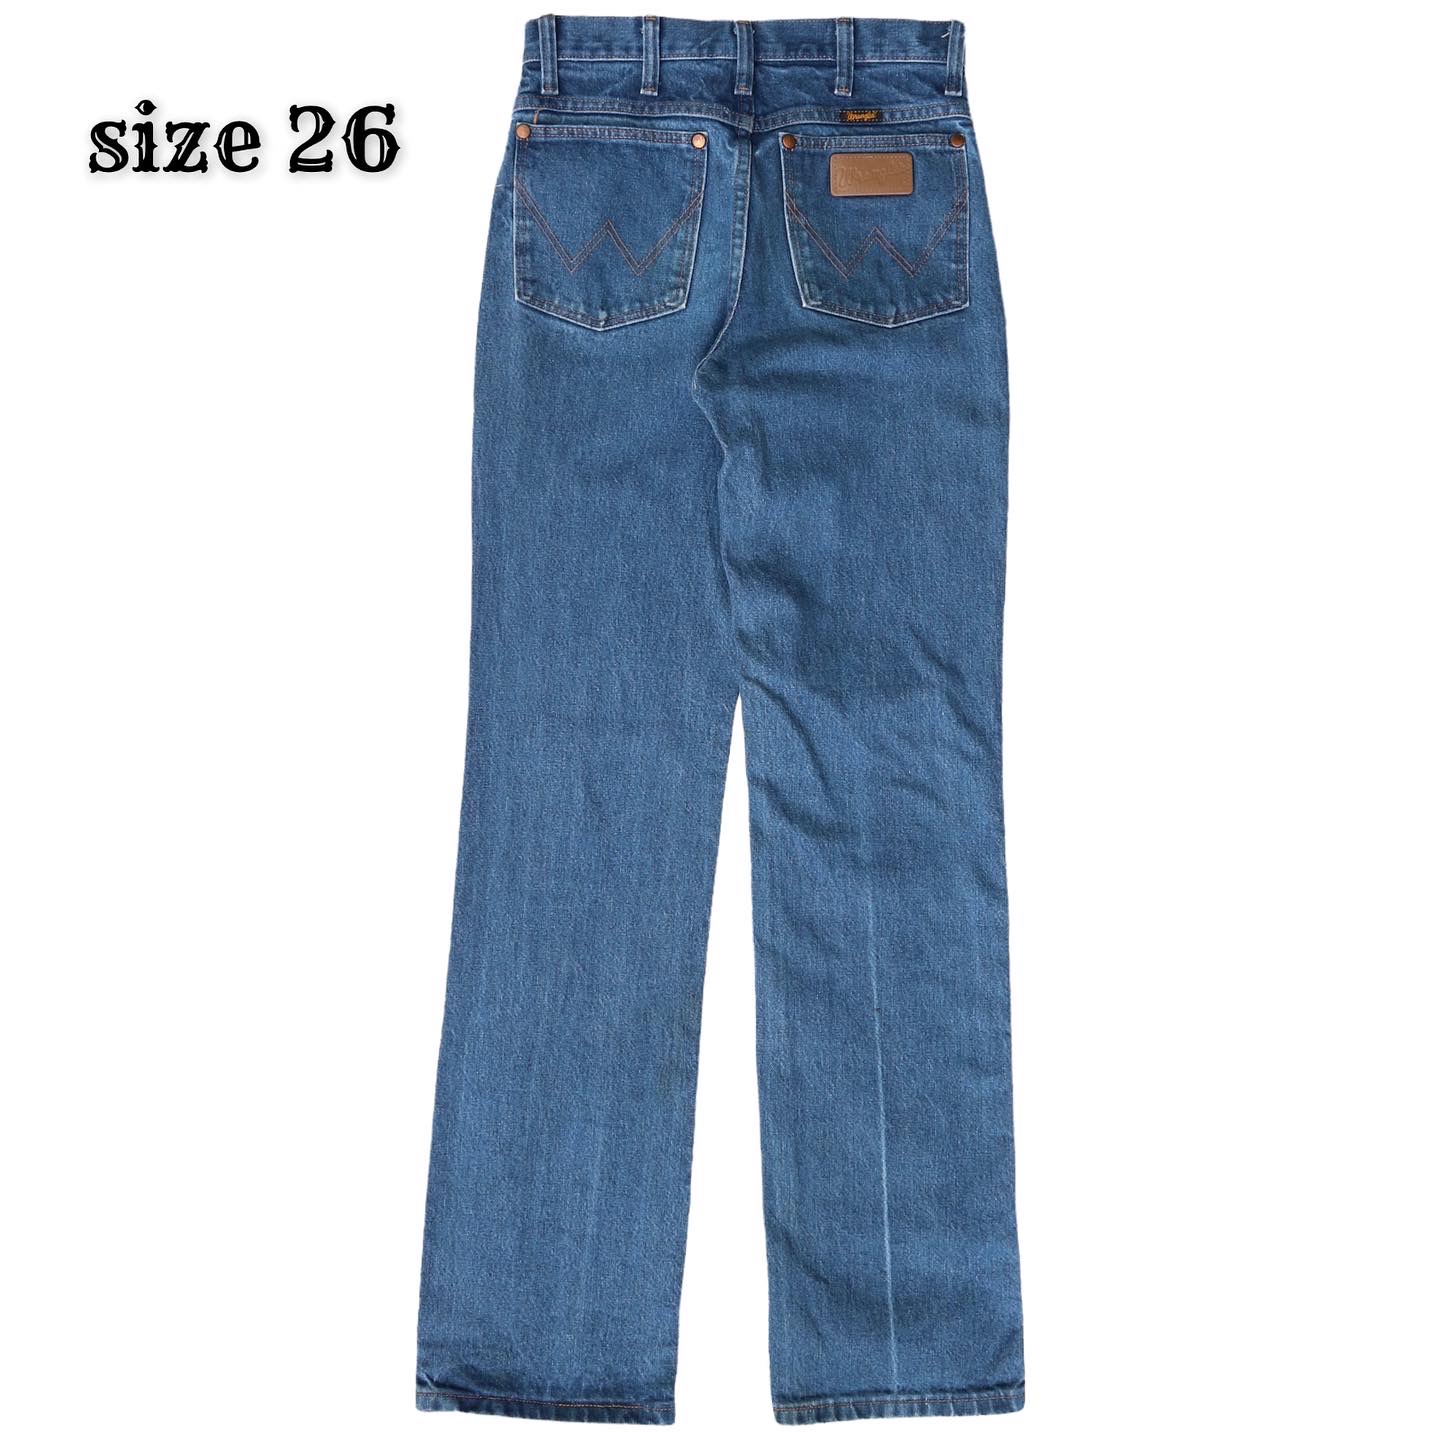 Wrangler Jeans Size 26 denimister